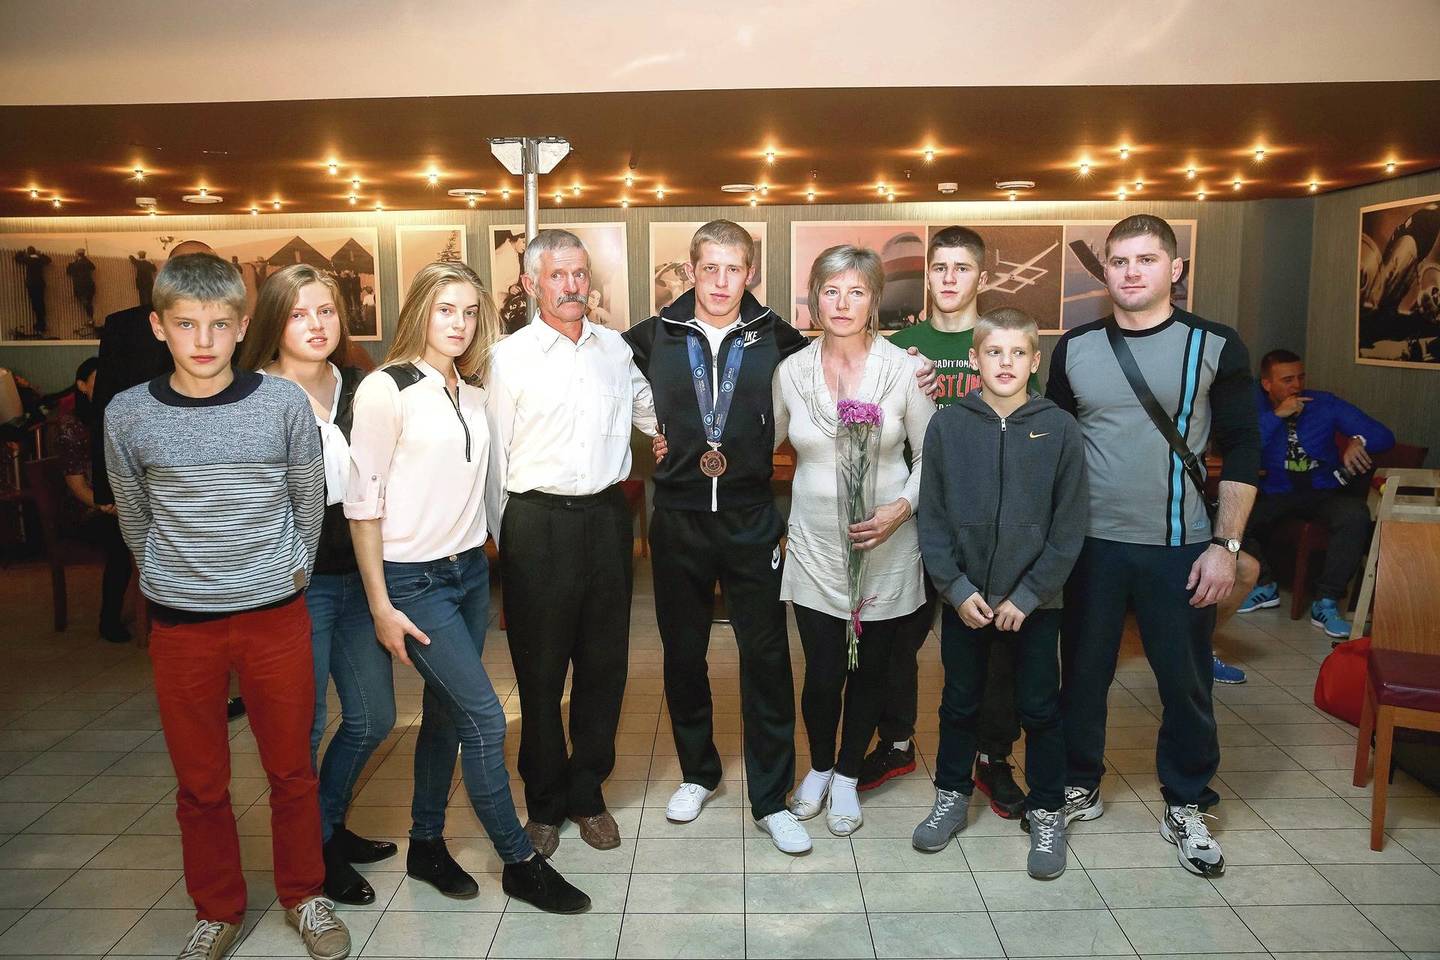 Pasveikinti pasaulio čempionato medalį iškovojusio sūnaus Edgaro į Vilnių buvo atvykusi visa gausi Venckaičių šeima: ne tik tėvai, bet ir 5 broliai bei 4 seserys.<br>T.Bauro nuotr.